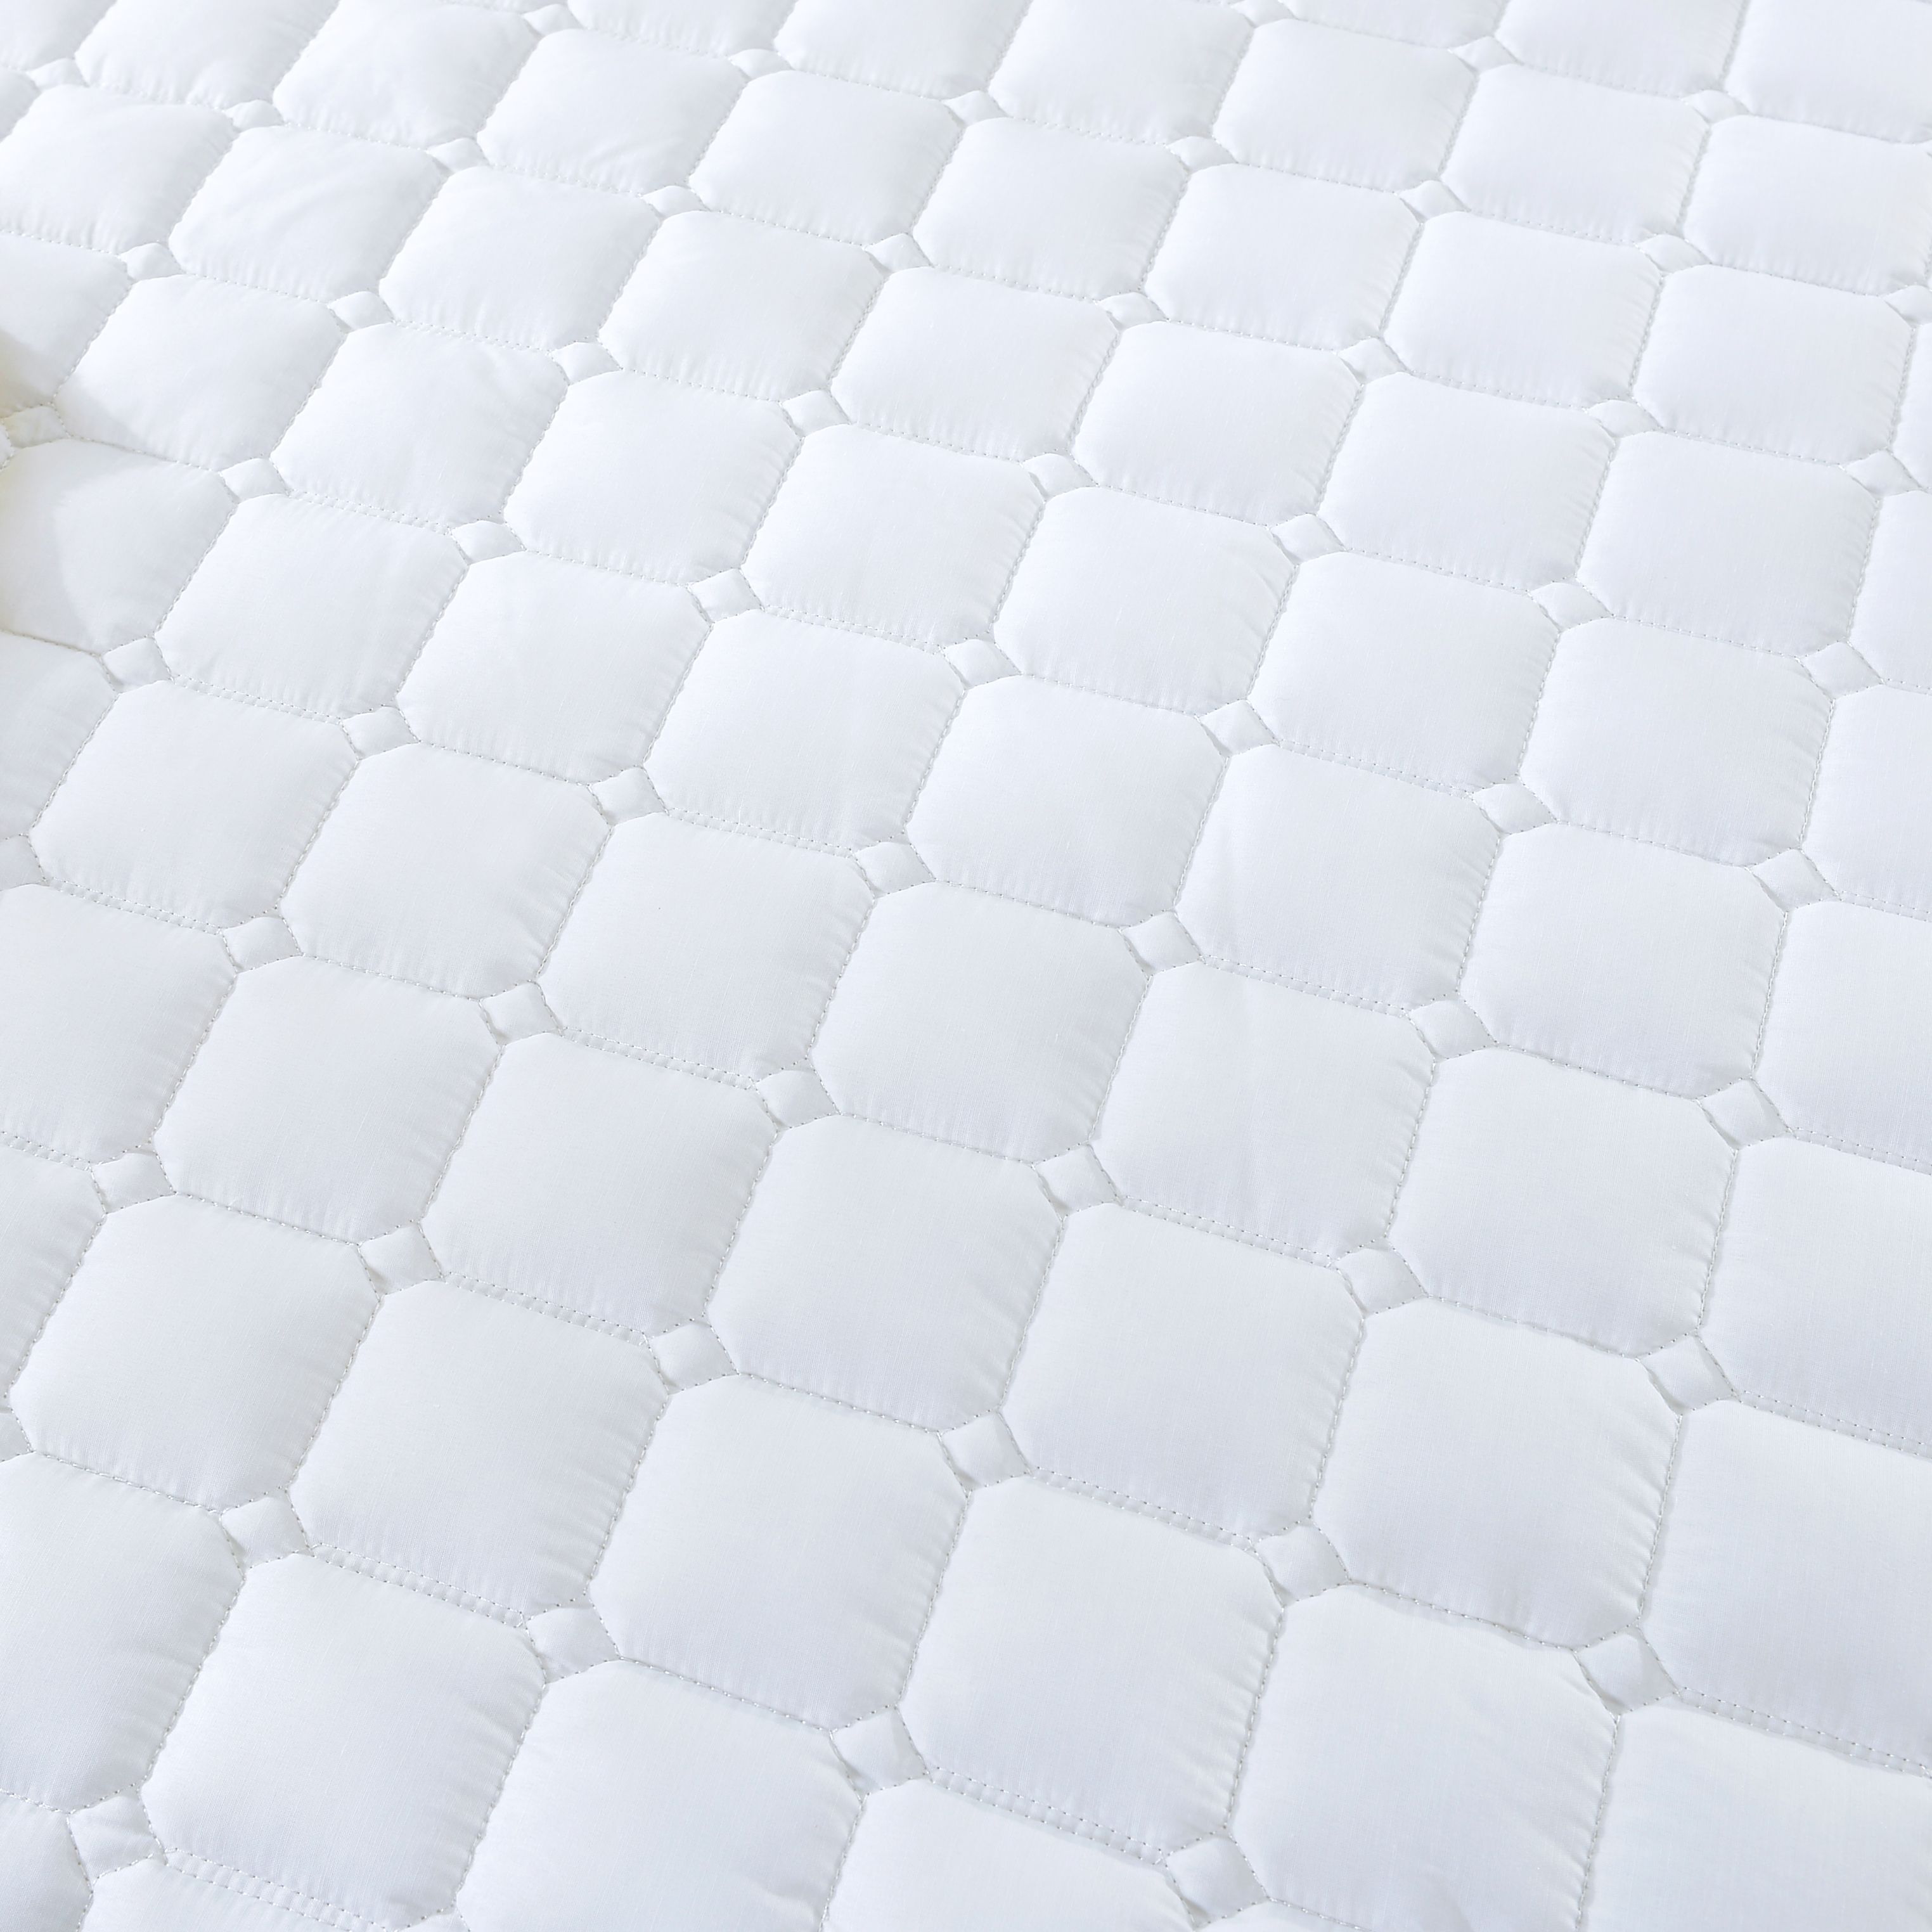 酒店保护垫/客房保护垫/客房床品产品图